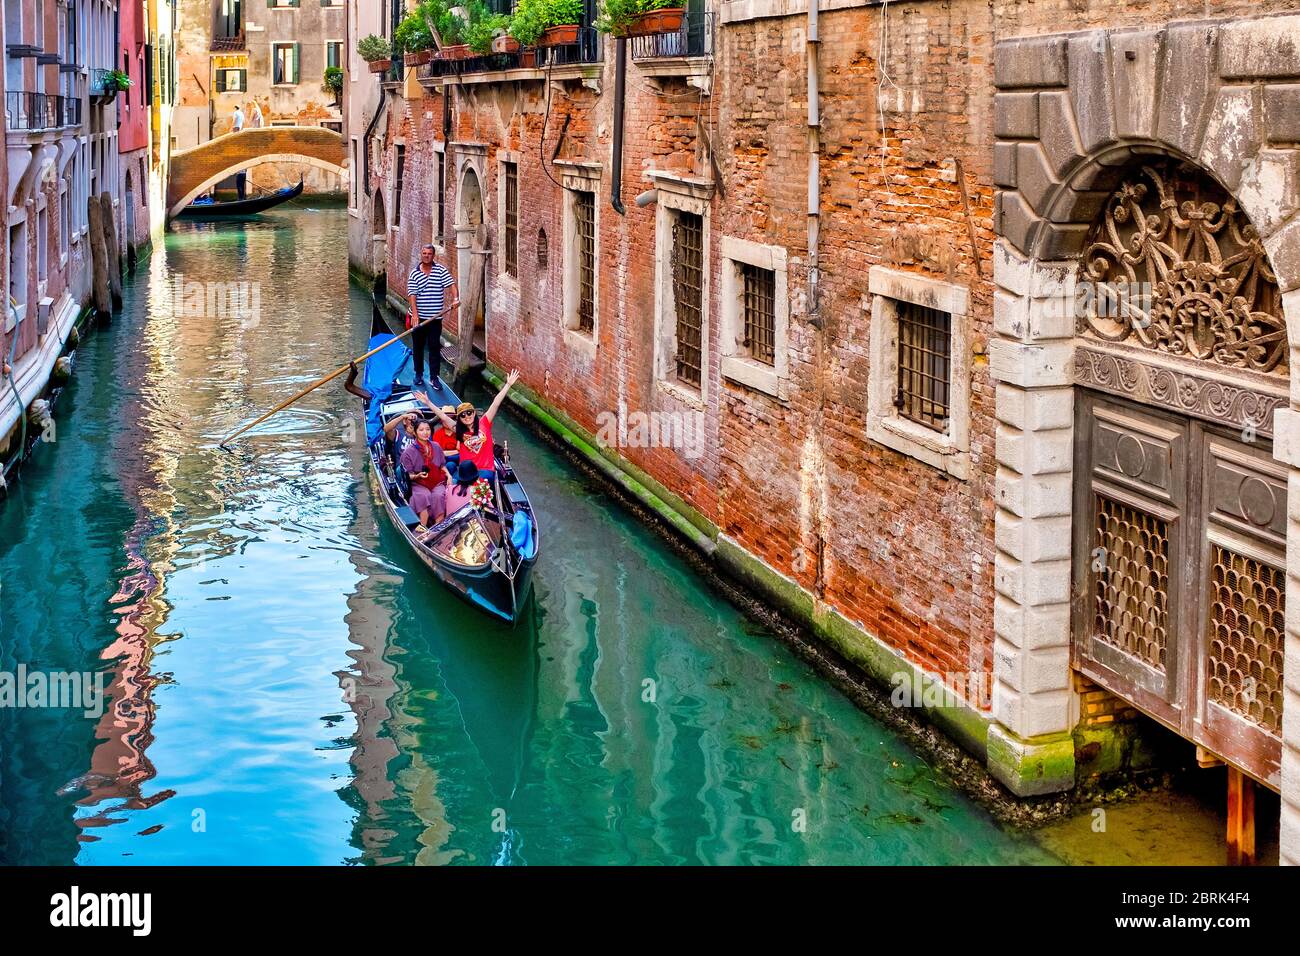 Gondola in Rio della Fava, Venice, Italy Stock Photo